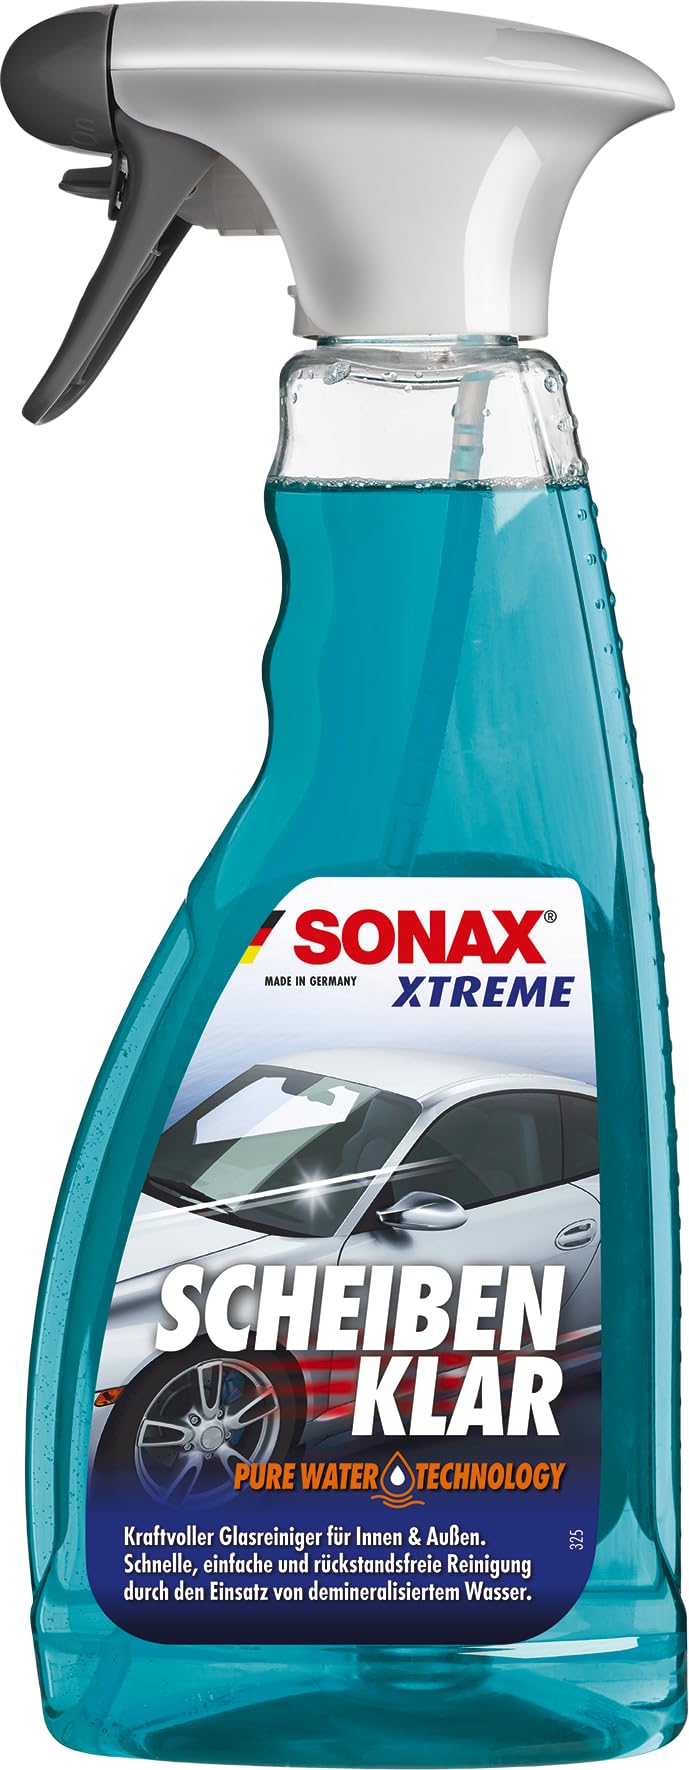 SONAX XTREME ScheibenKlar - Pure Water Technology (500 ml) Glasreiniger zur Entfernung von Verschmutzungen auf Scheiben & für eine besser benetzte Glasoberfläche, Art-Nr. 02382410 von SONAX